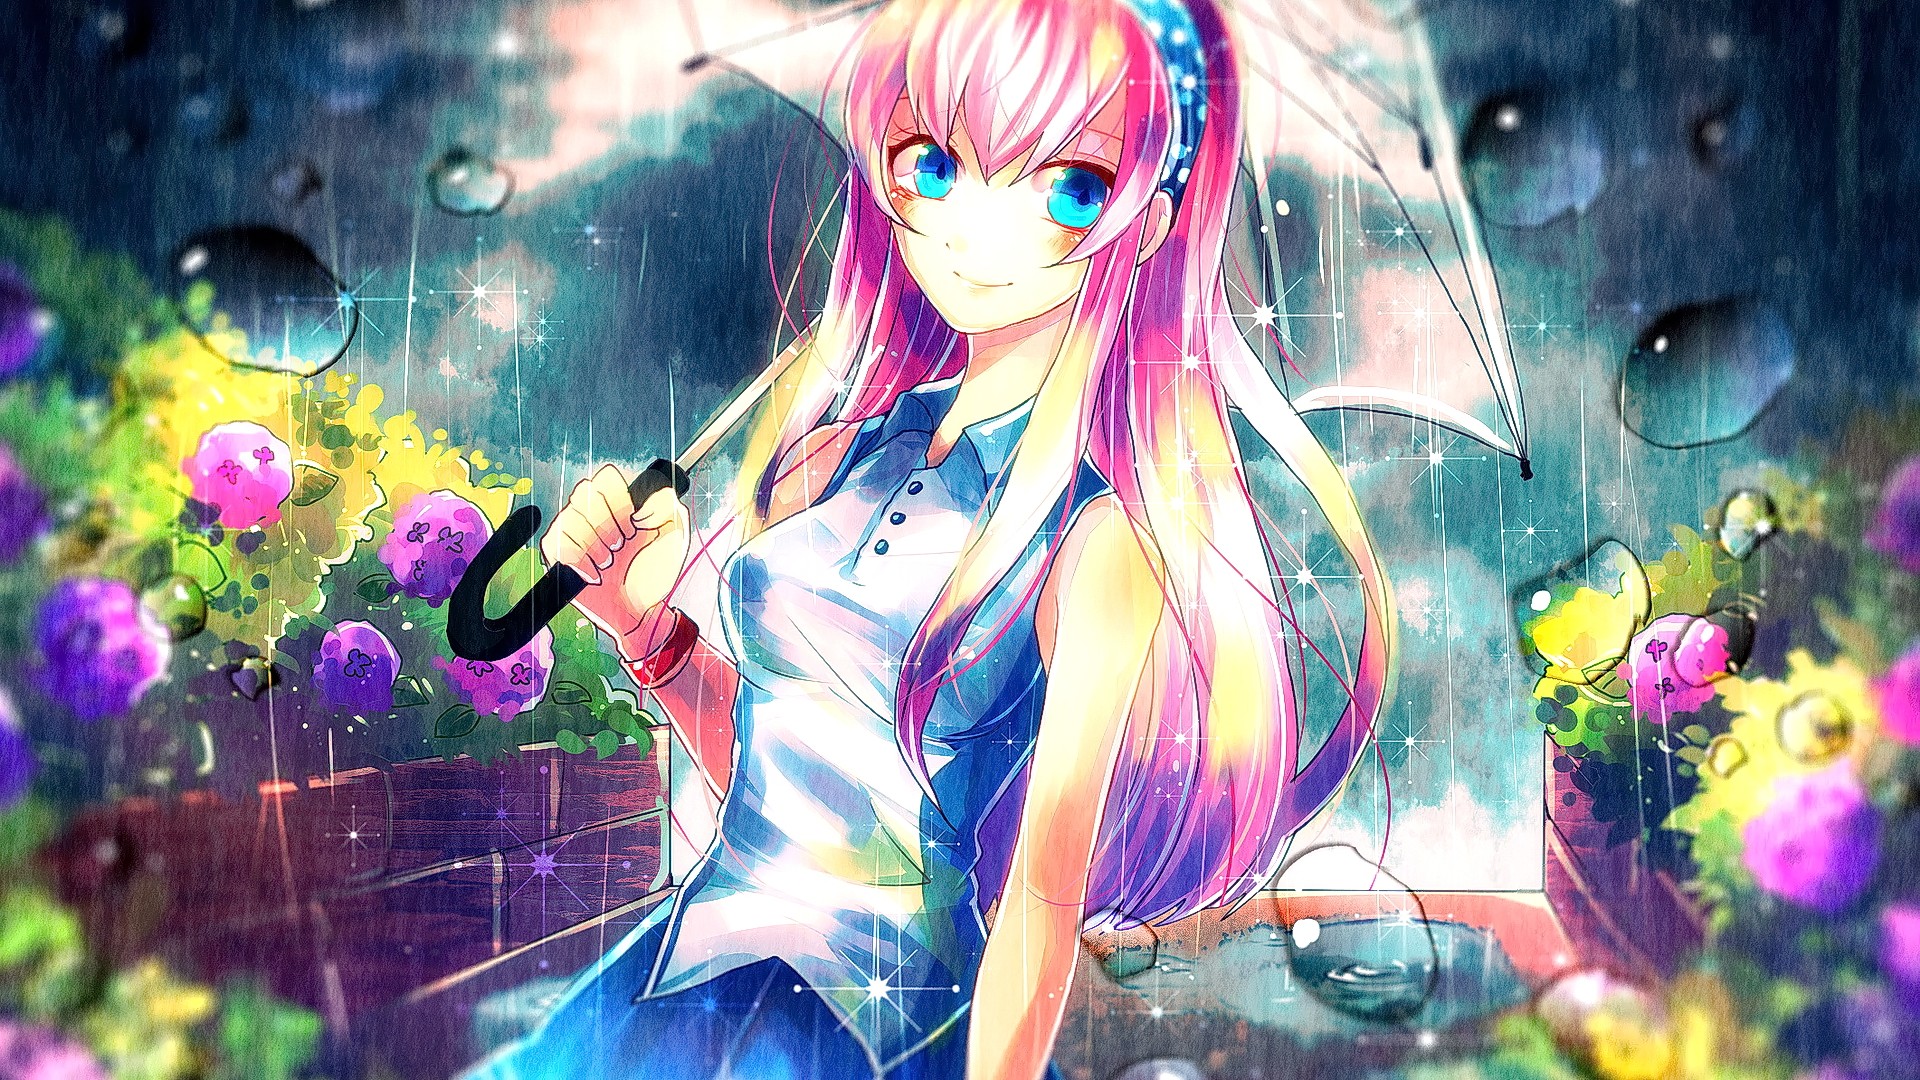 Anime Anime Girls Pink Hair Umbrella Blue Eyes Smiling Megurine Luka 1920x1080